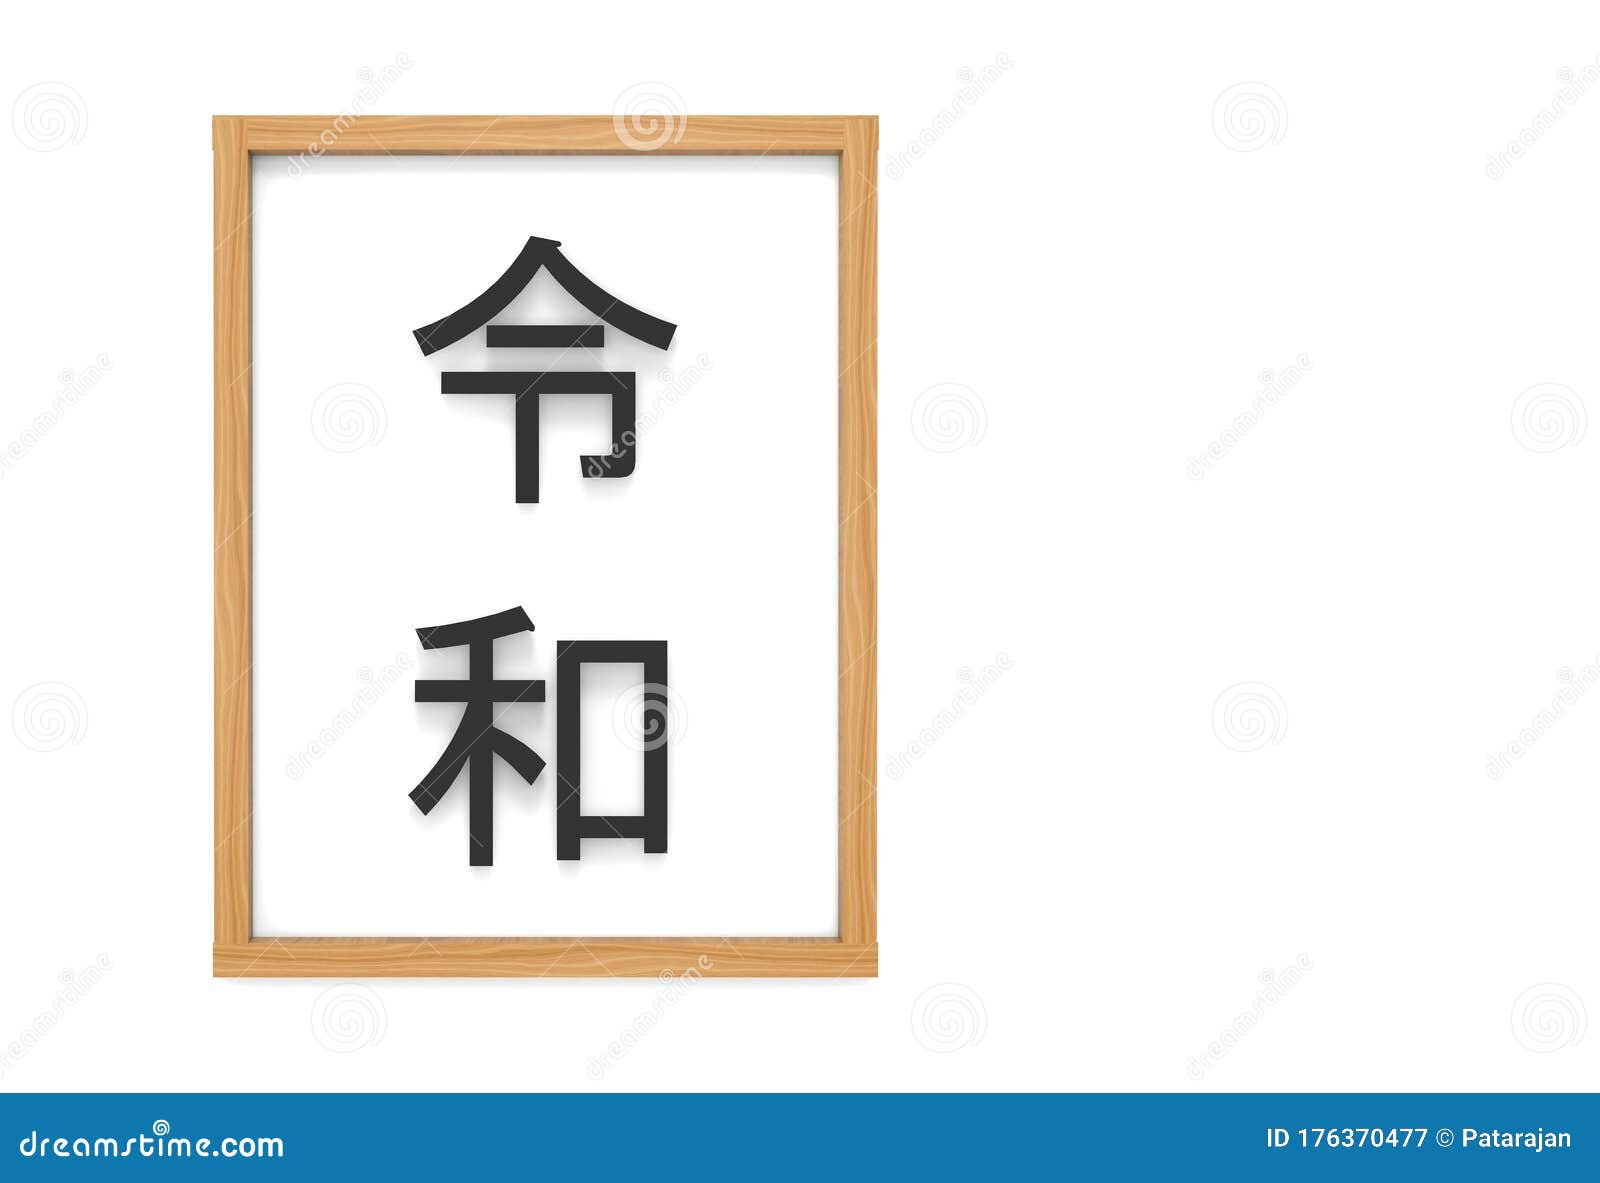 三维渲染日本新时代汉字名称 Reiwa表示和平的未来 以白板木框背景库存例证 插画包括有日本新时代汉字名称 Reiwa表示和平的未来 以白板木框背景 三维渲染